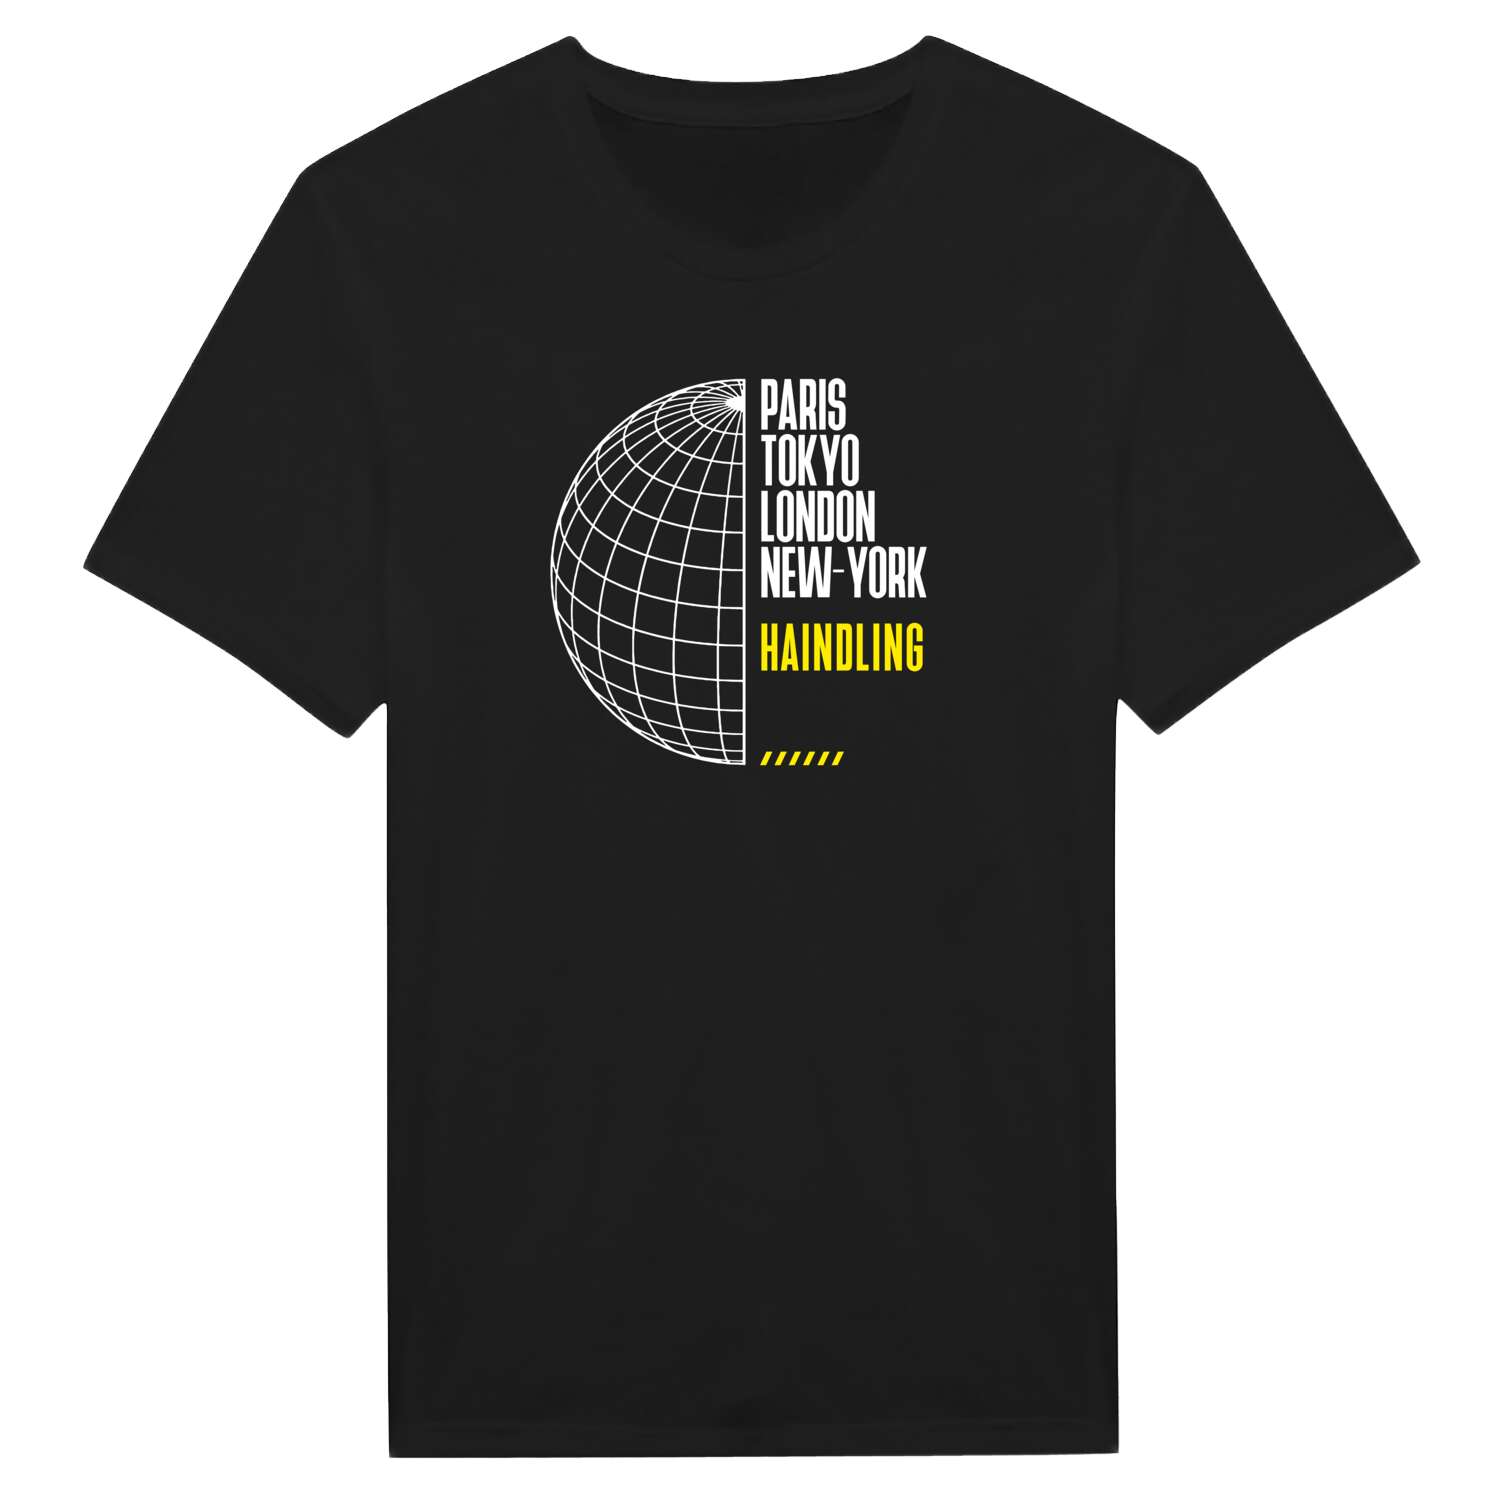 Haindling T-Shirt »Paris Tokyo London«